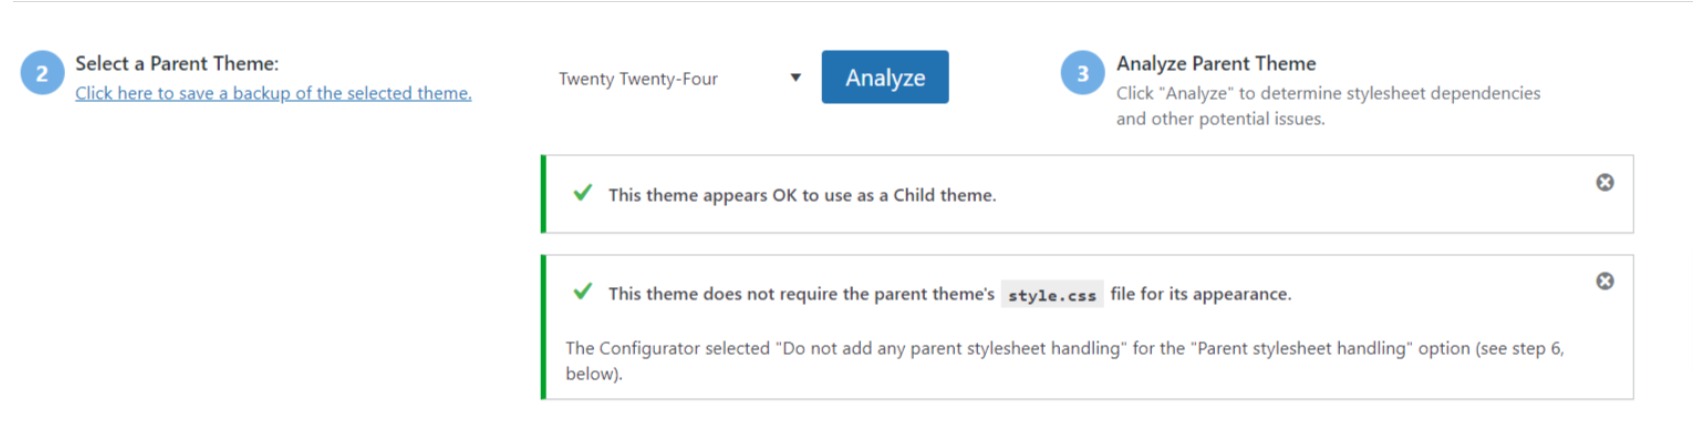 Select parent theme